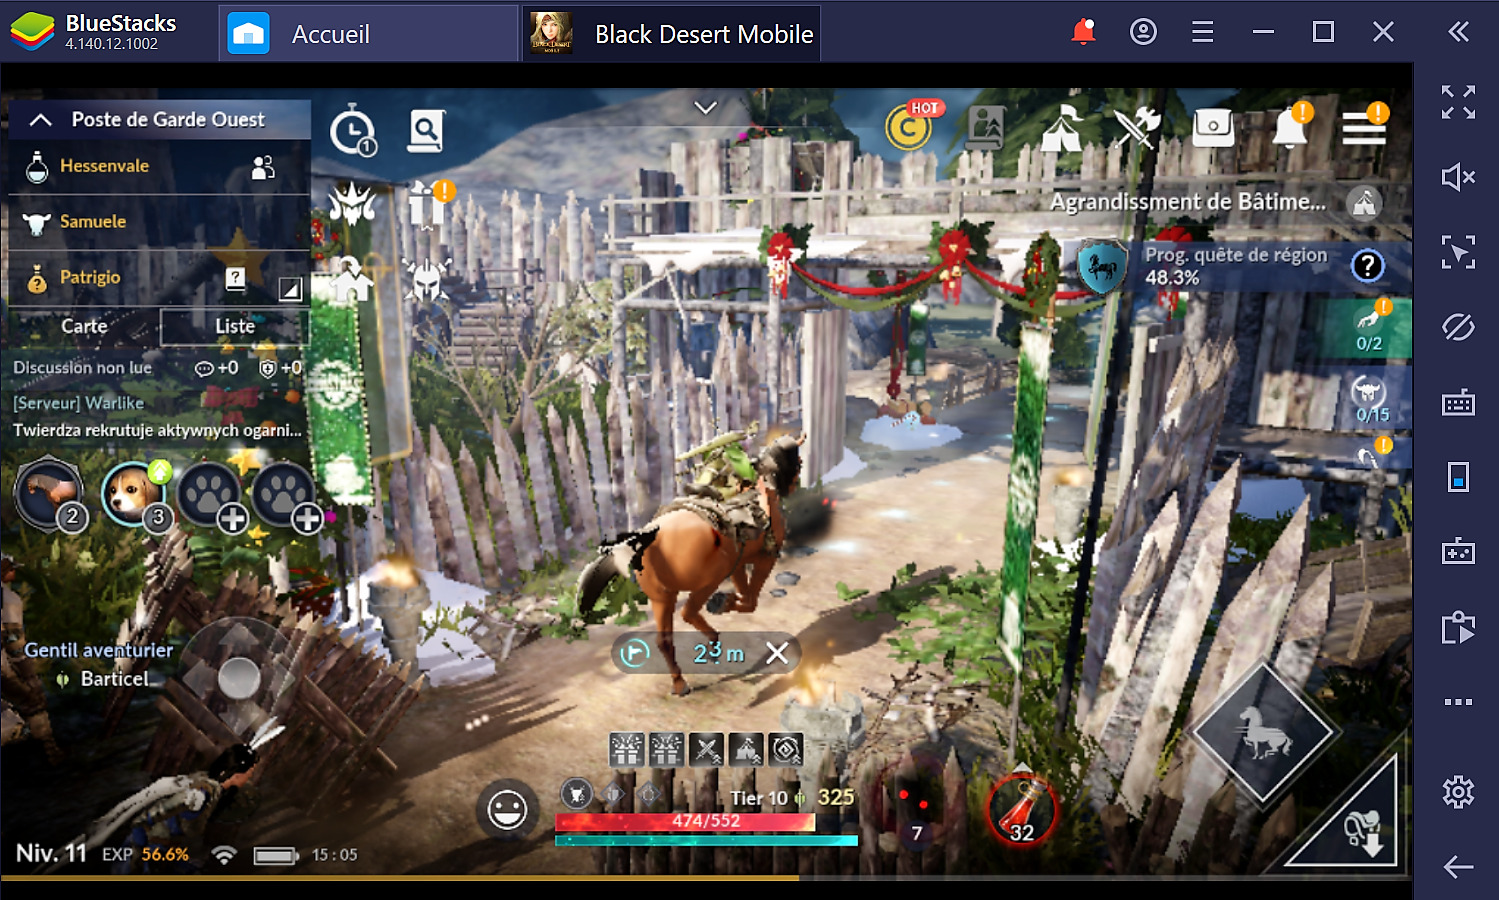 Guide BlueStacks pour Black Desert Mobile – Comment révéler tout le potentiel de ce MMORPG